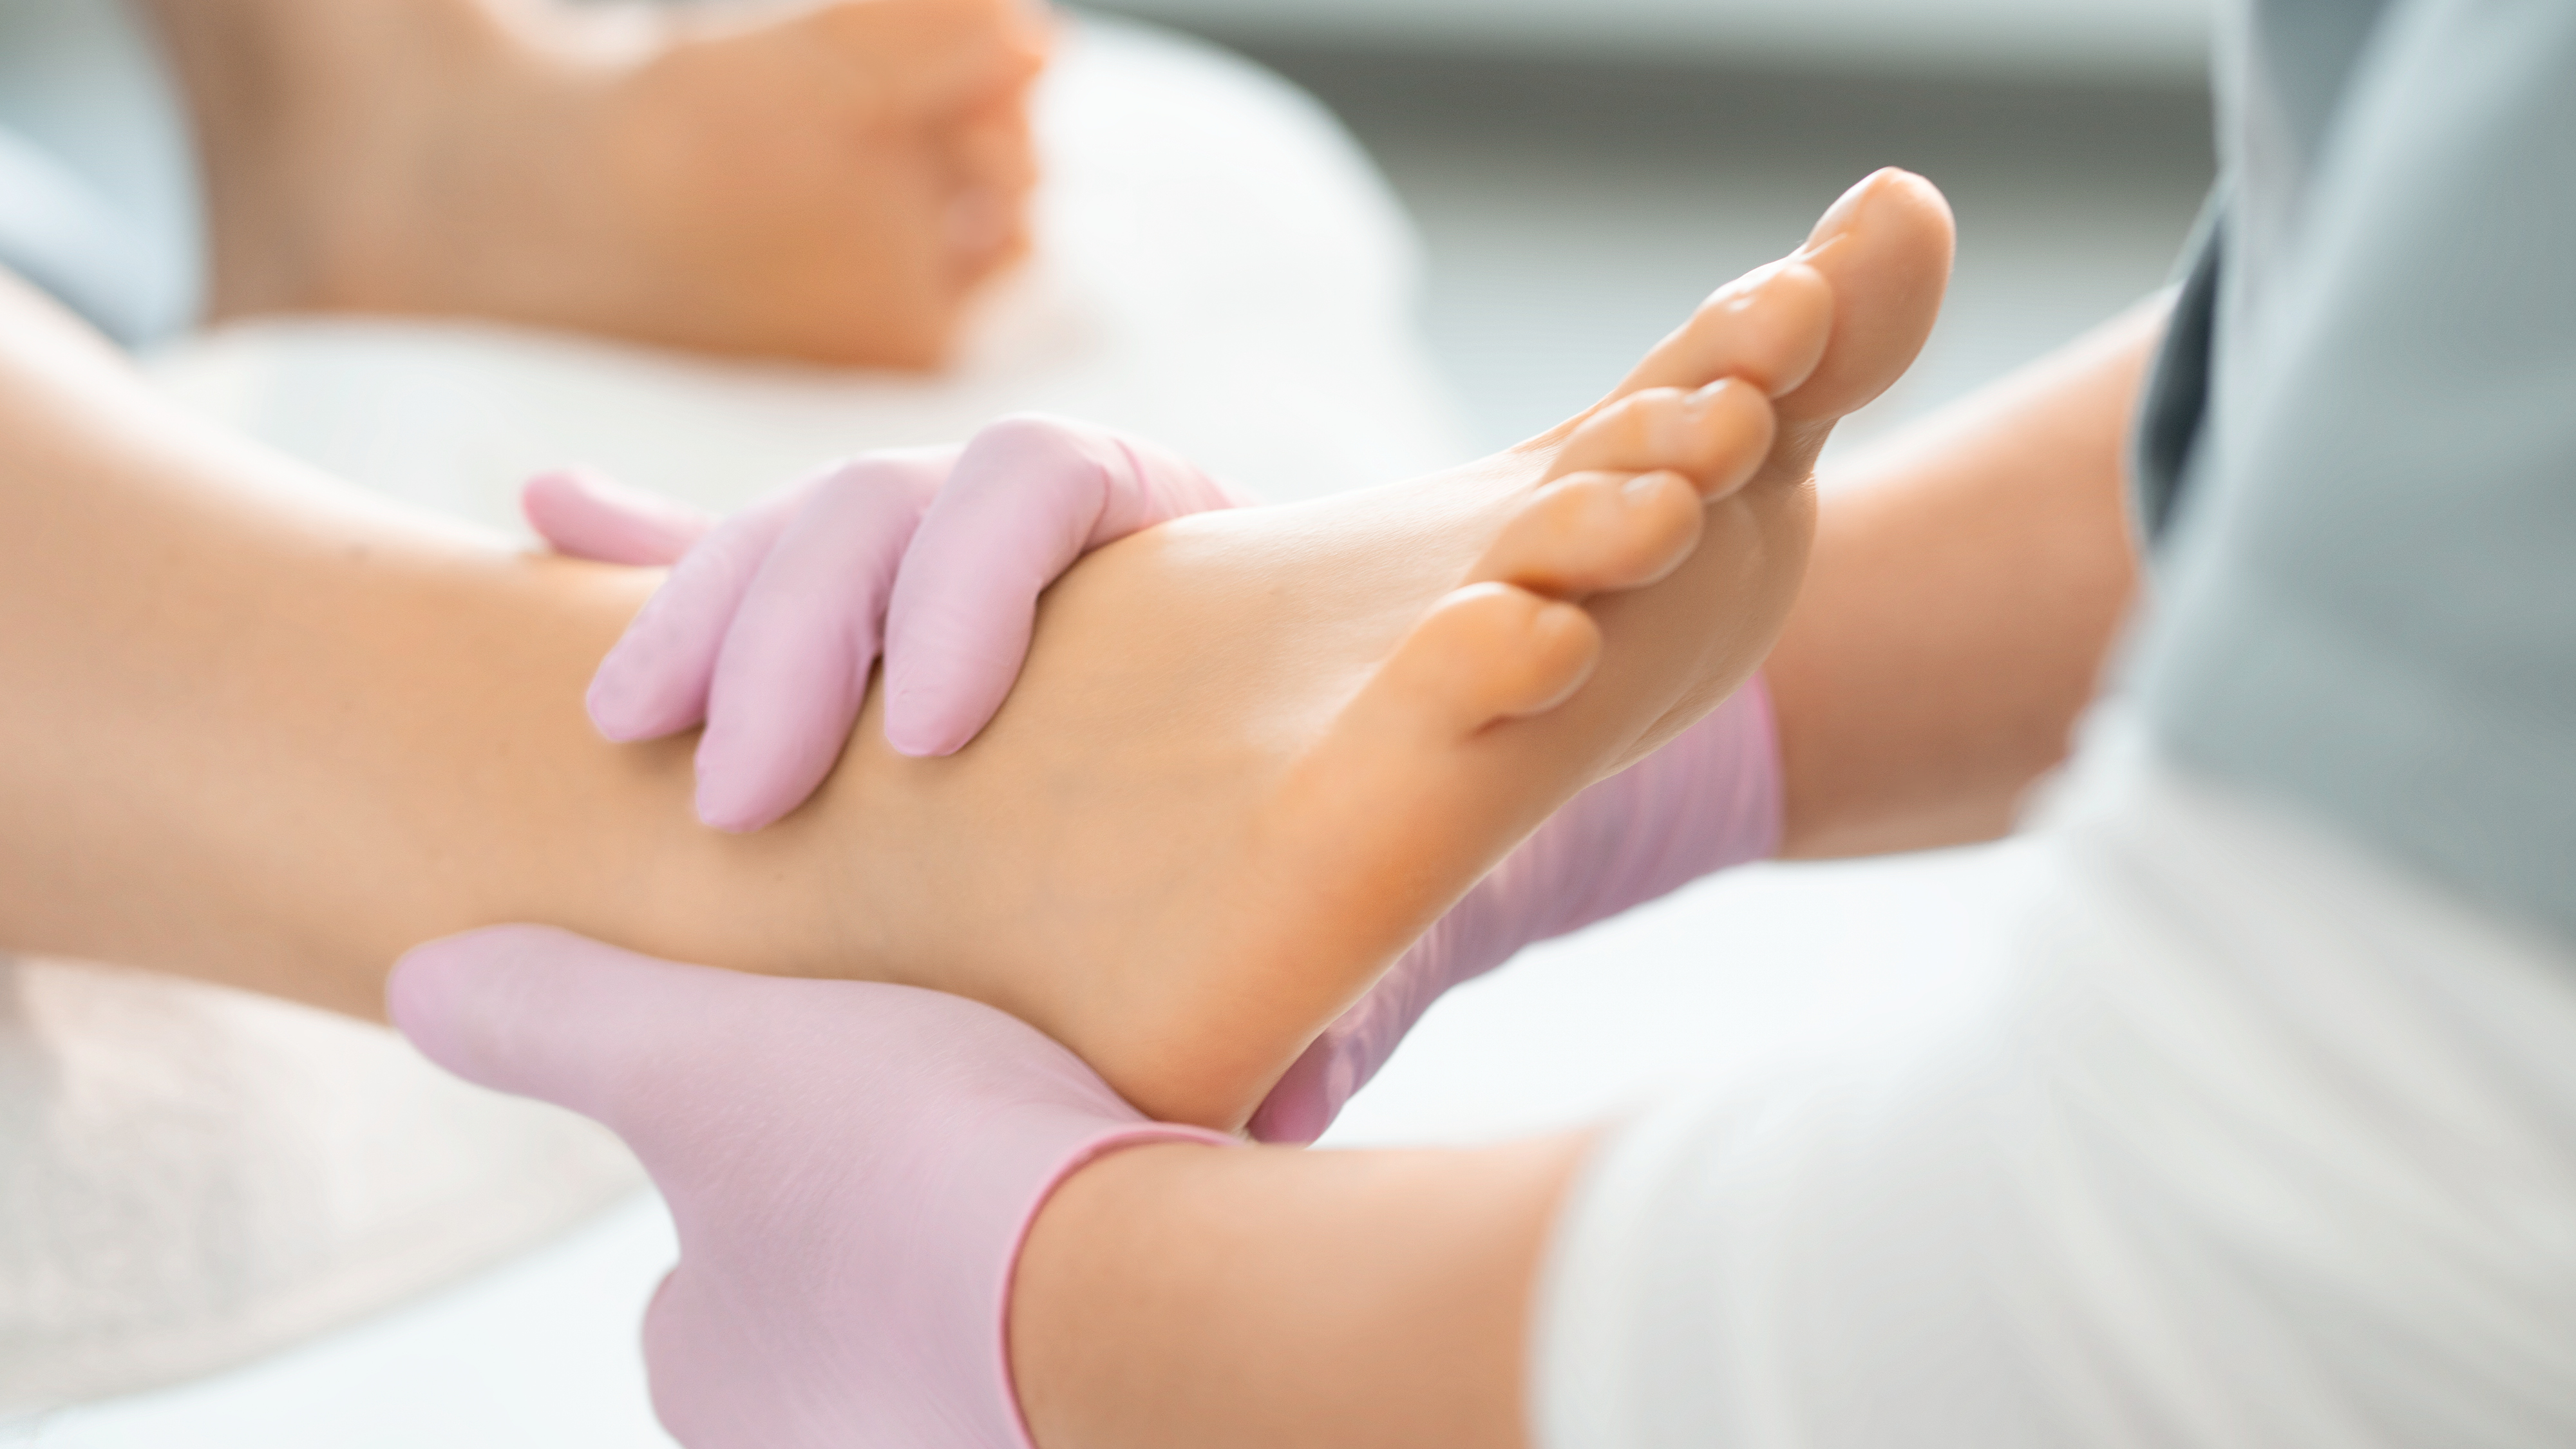 Gesunde Füße die von den Händen berührt werden. Für die optimale Fußpflege.